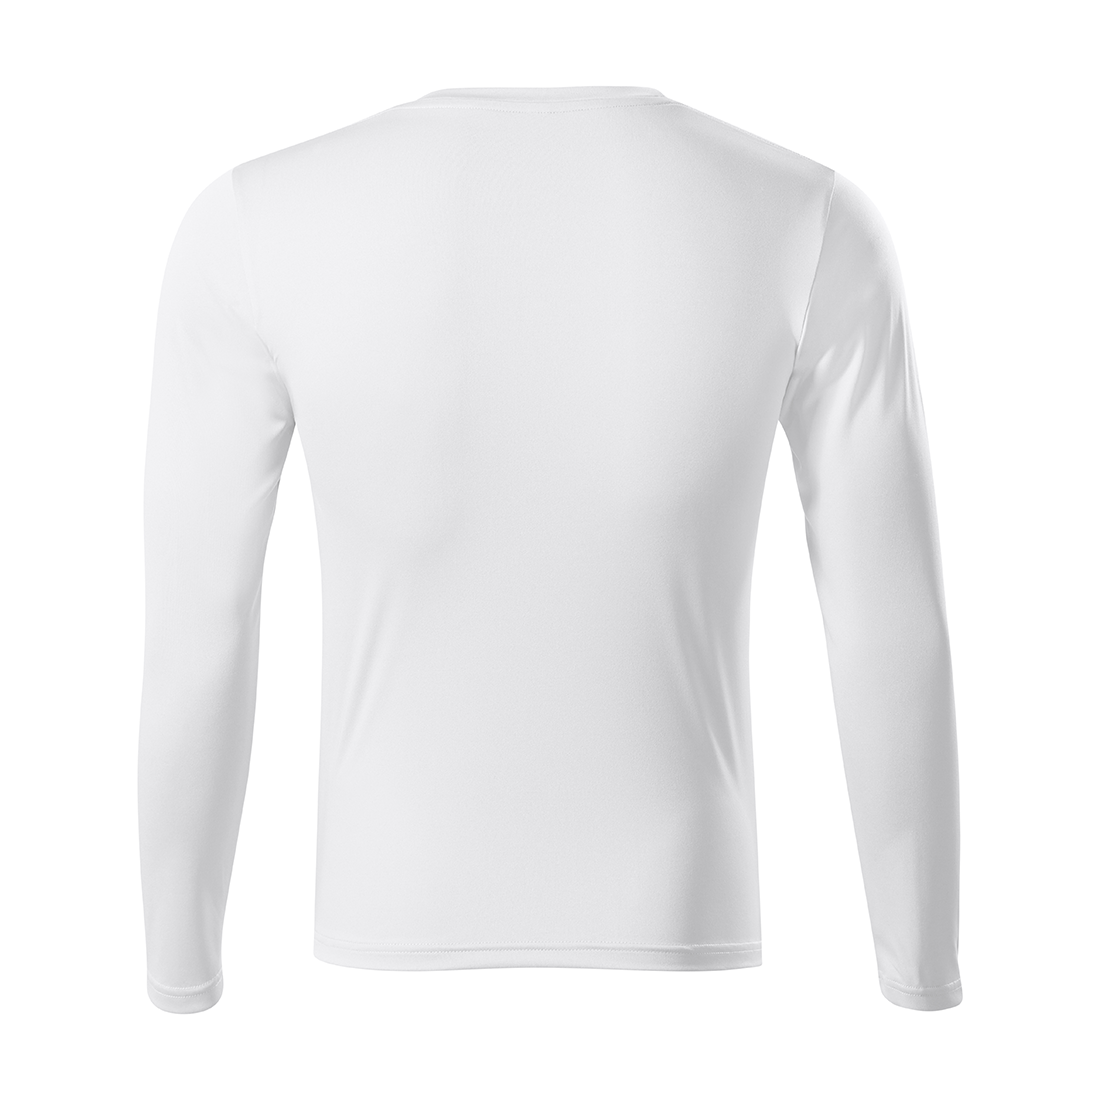 PRIDE Unisex T-shirt - Safetywear